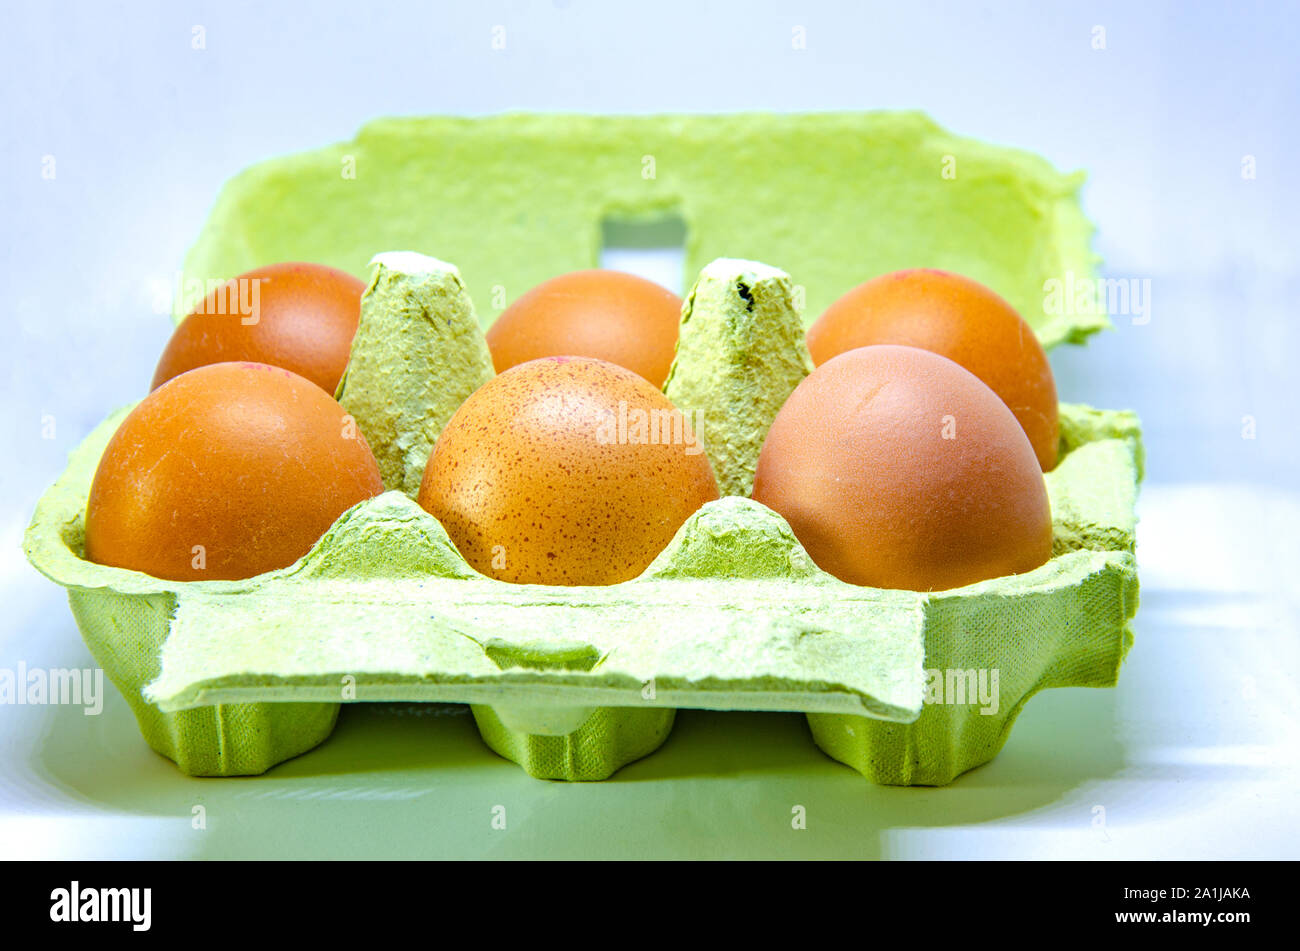 Half a dozen eggs in a paper egg box. Stock Photo